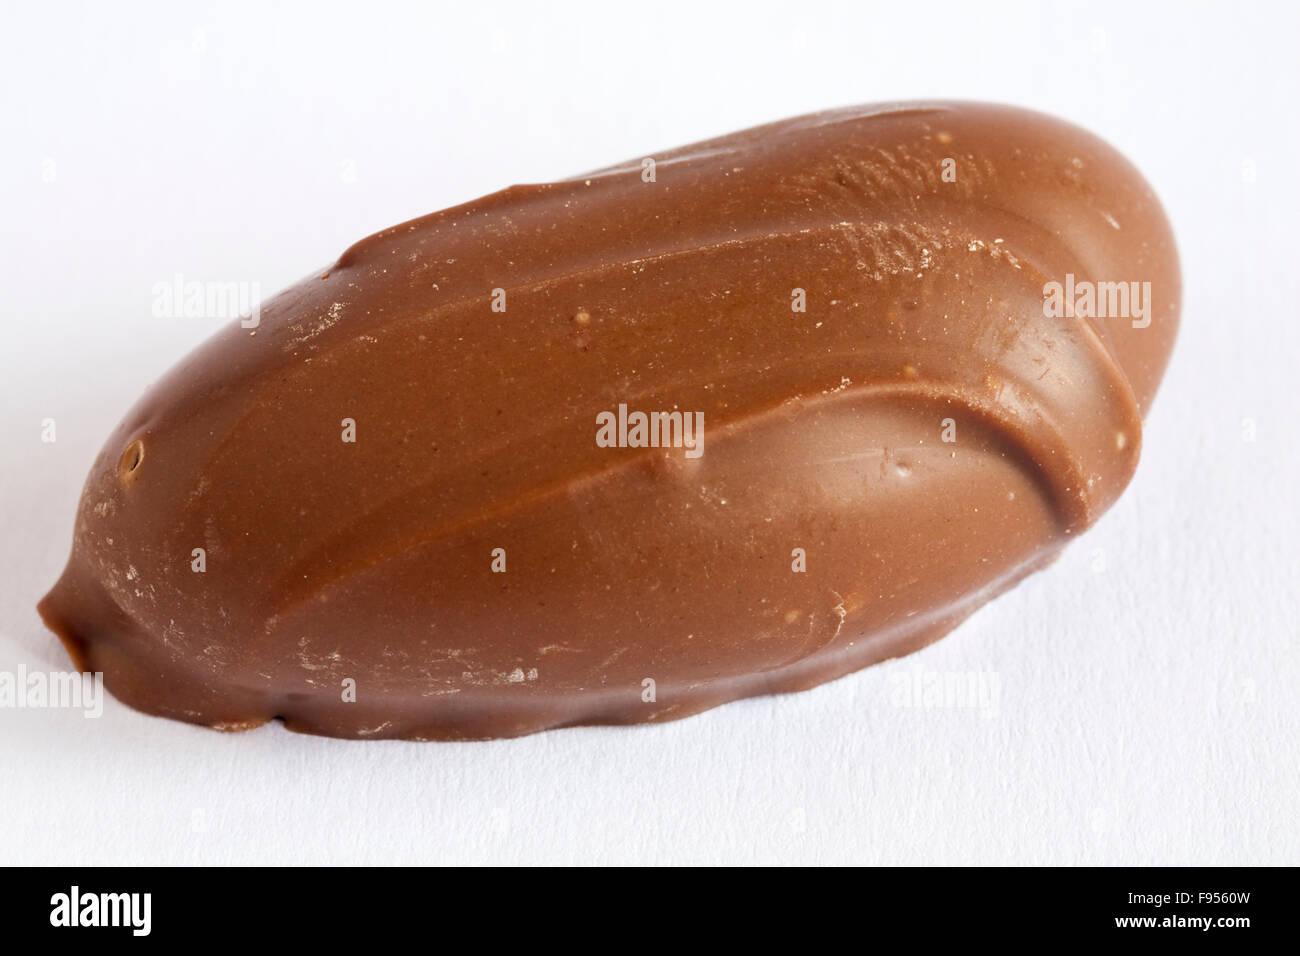 Single milk chocolate coated brazil nut isolated on white background Stock Photo